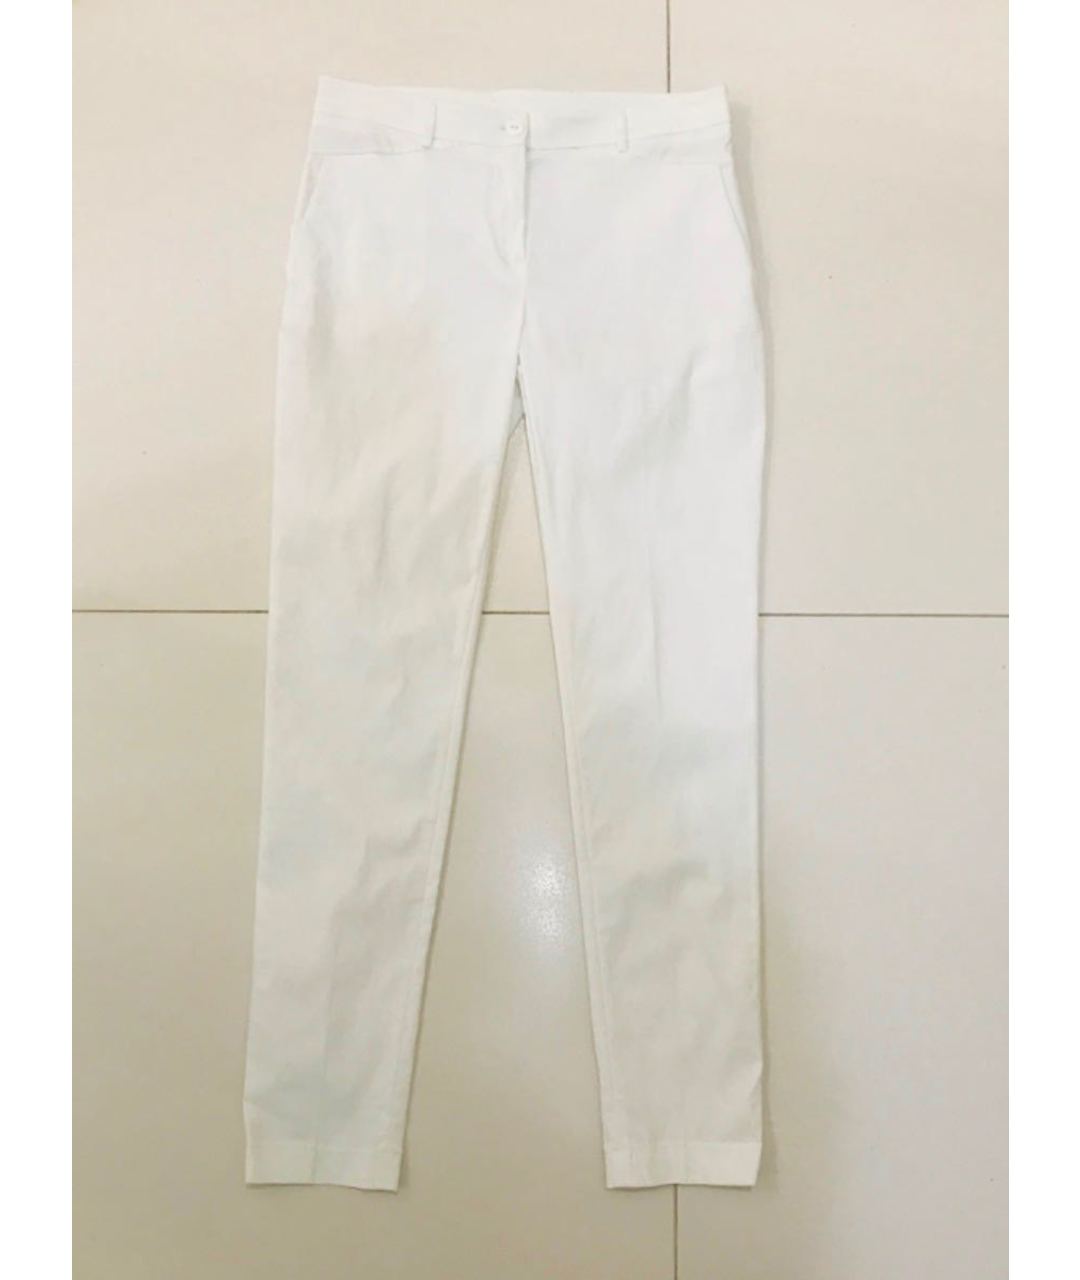 TWIN-SET Белые вискозные брюки узкие, фото 3